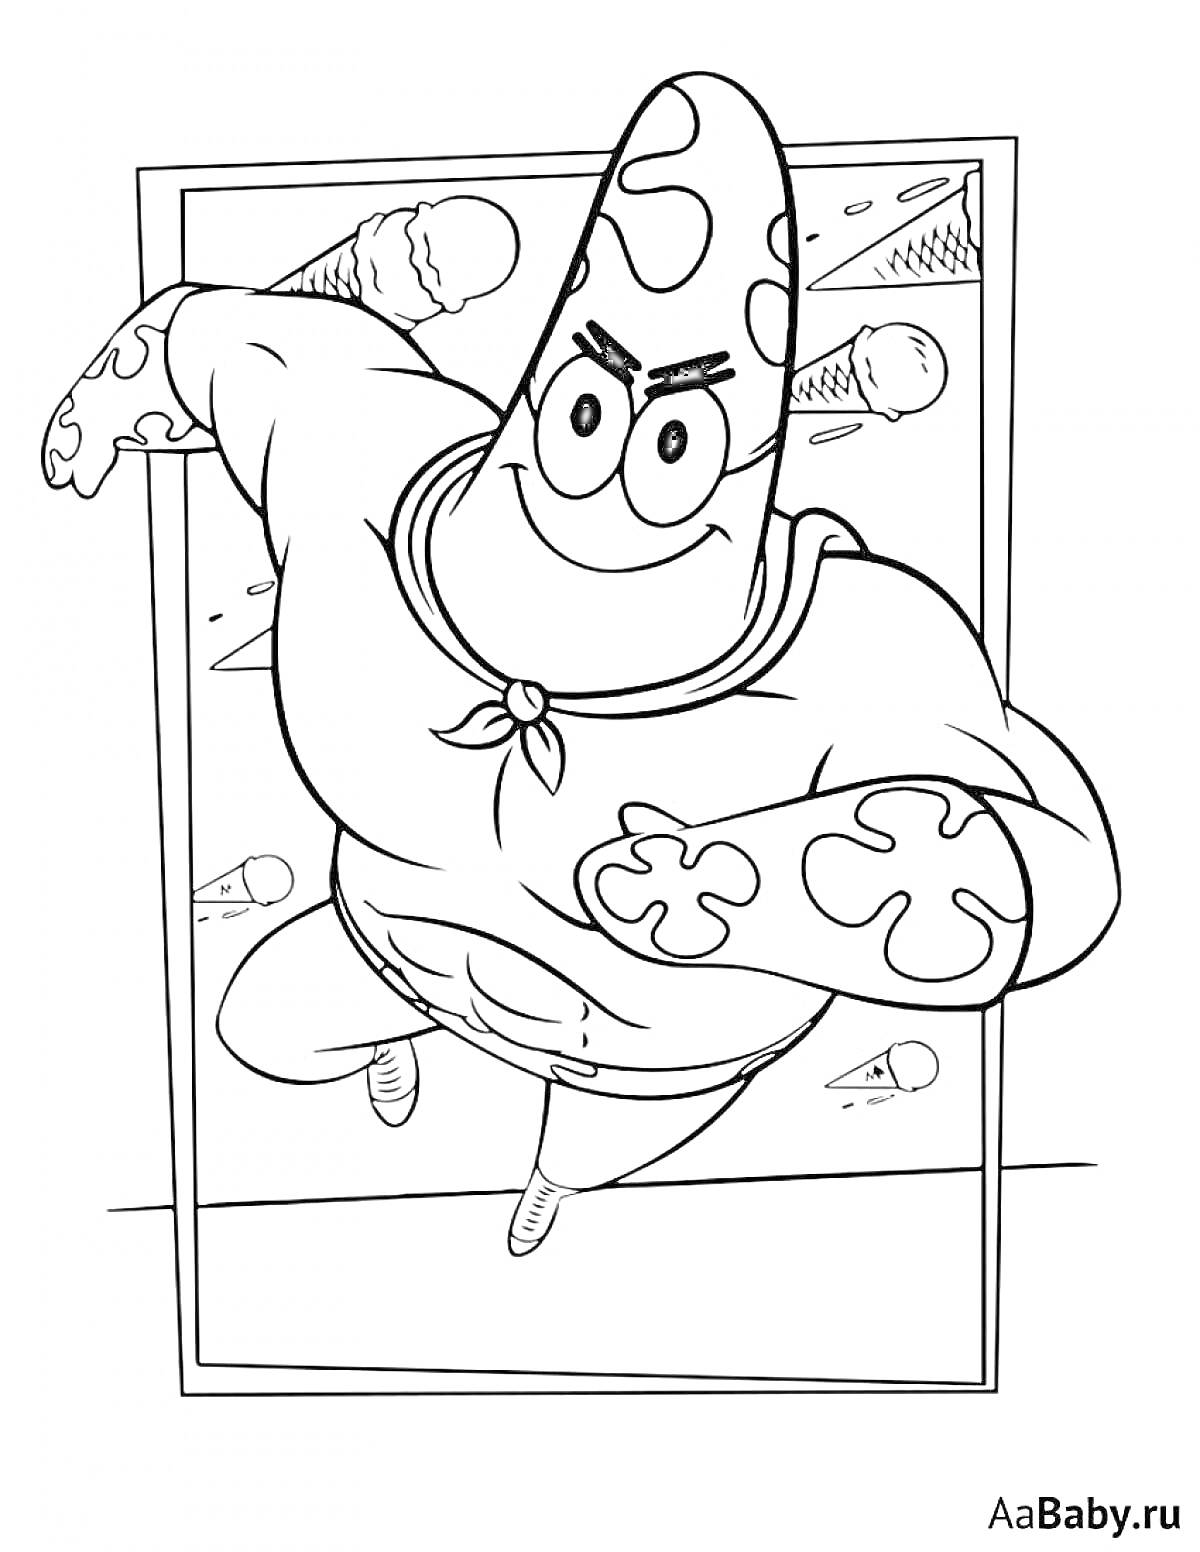 Раскраска Патрик в супергеройском костюме с маской и накидкой, фон с облаками и ракетами